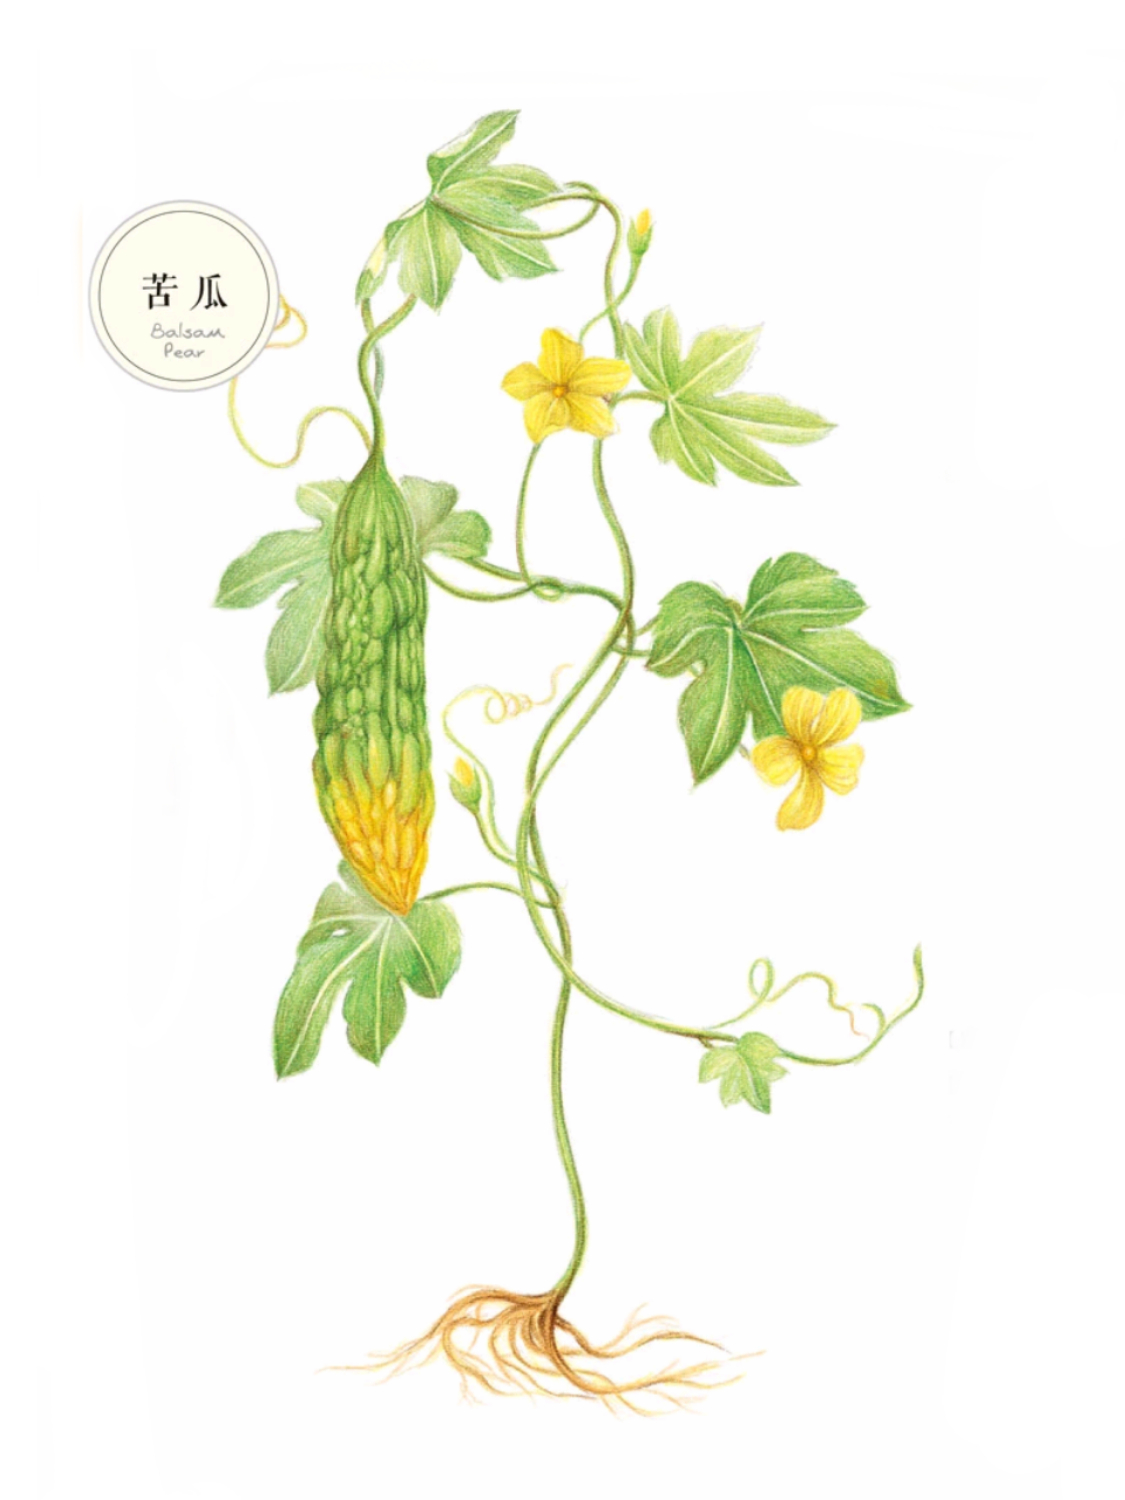 苦瓜蔬菜花卉插画手绘彩铅画色铅笔本草绘植物